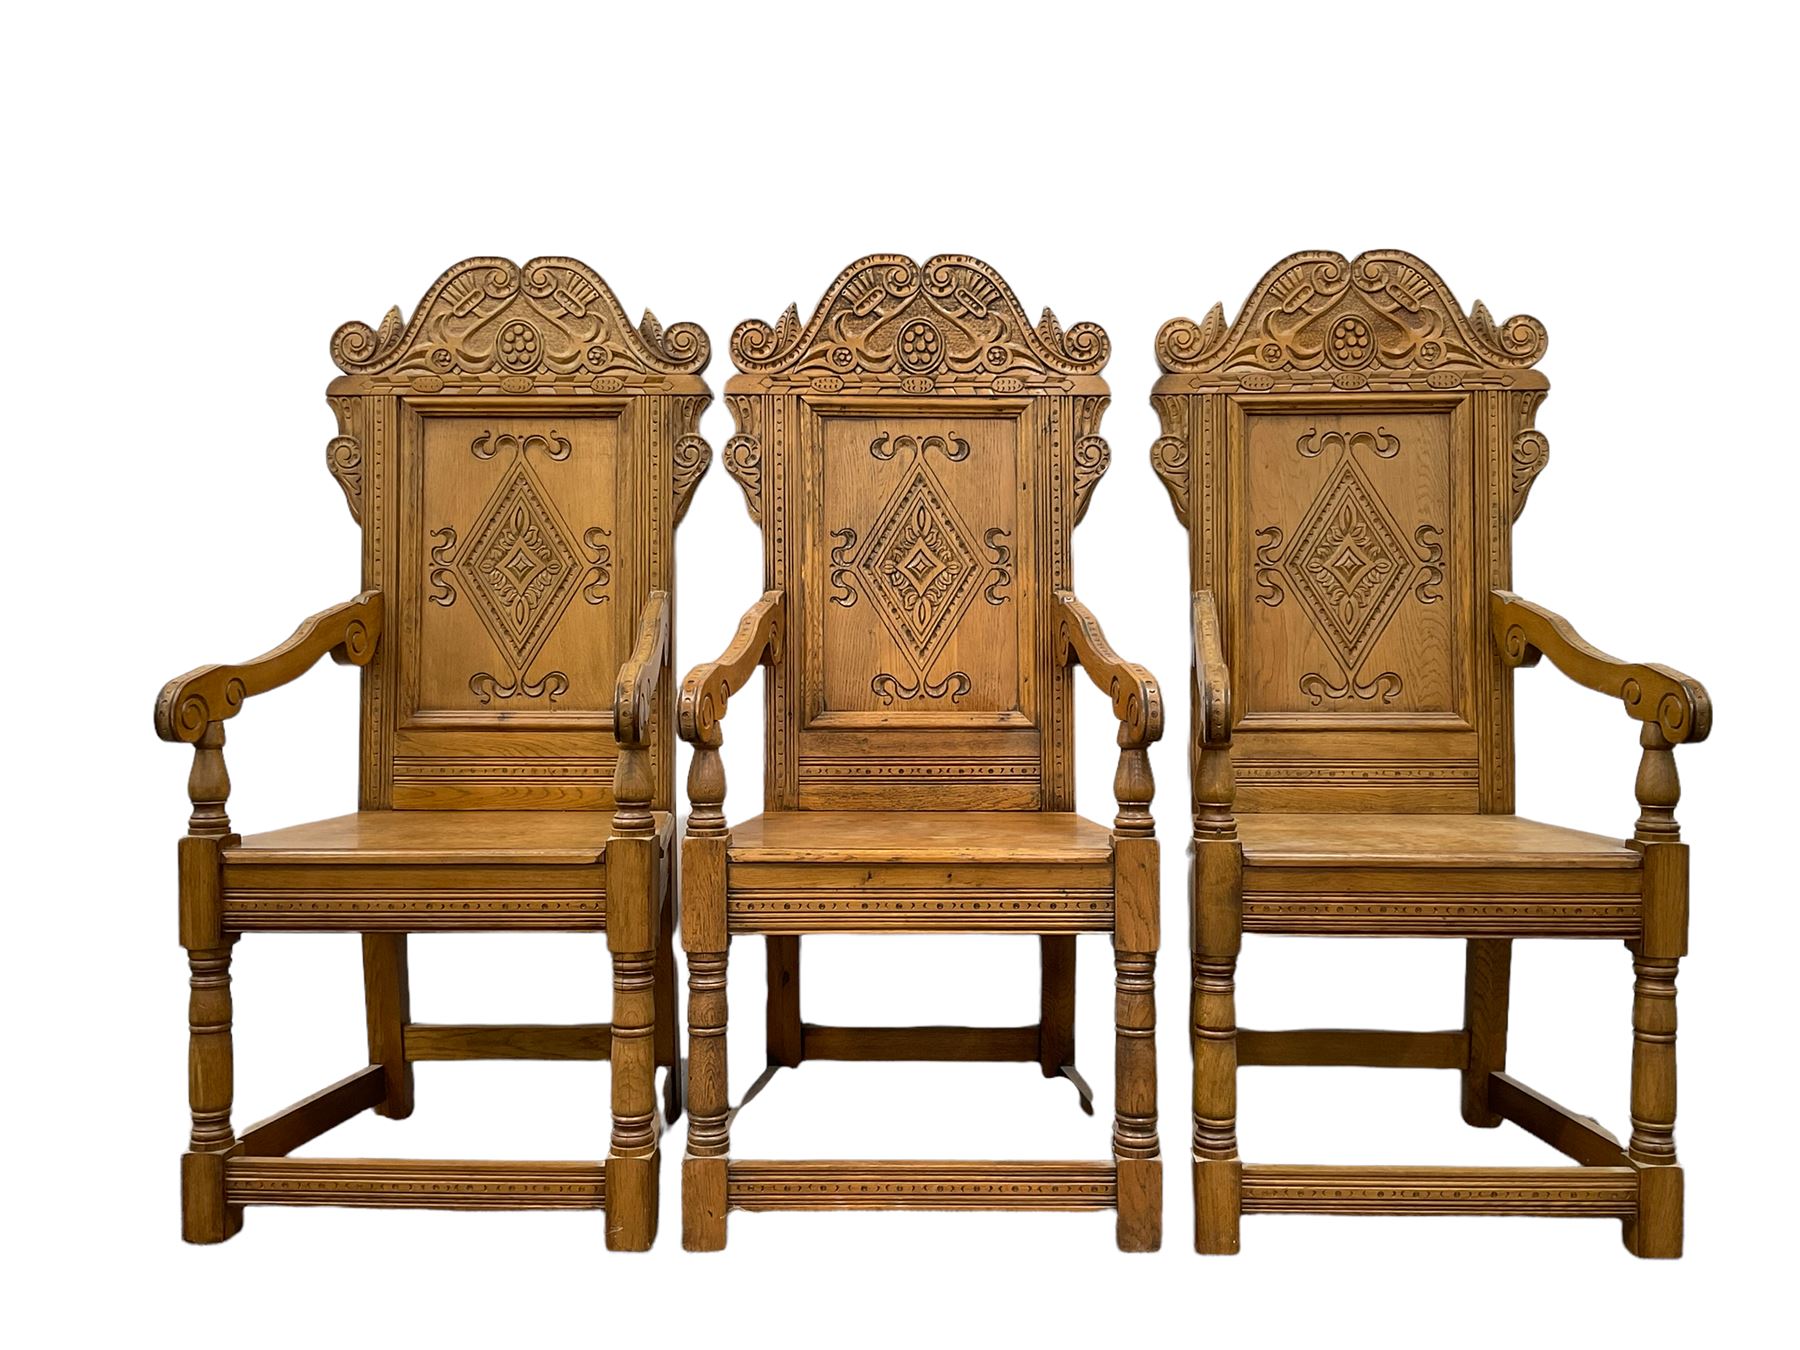 Set six 17th century style oak Wainscot chairs - Image 2 of 8